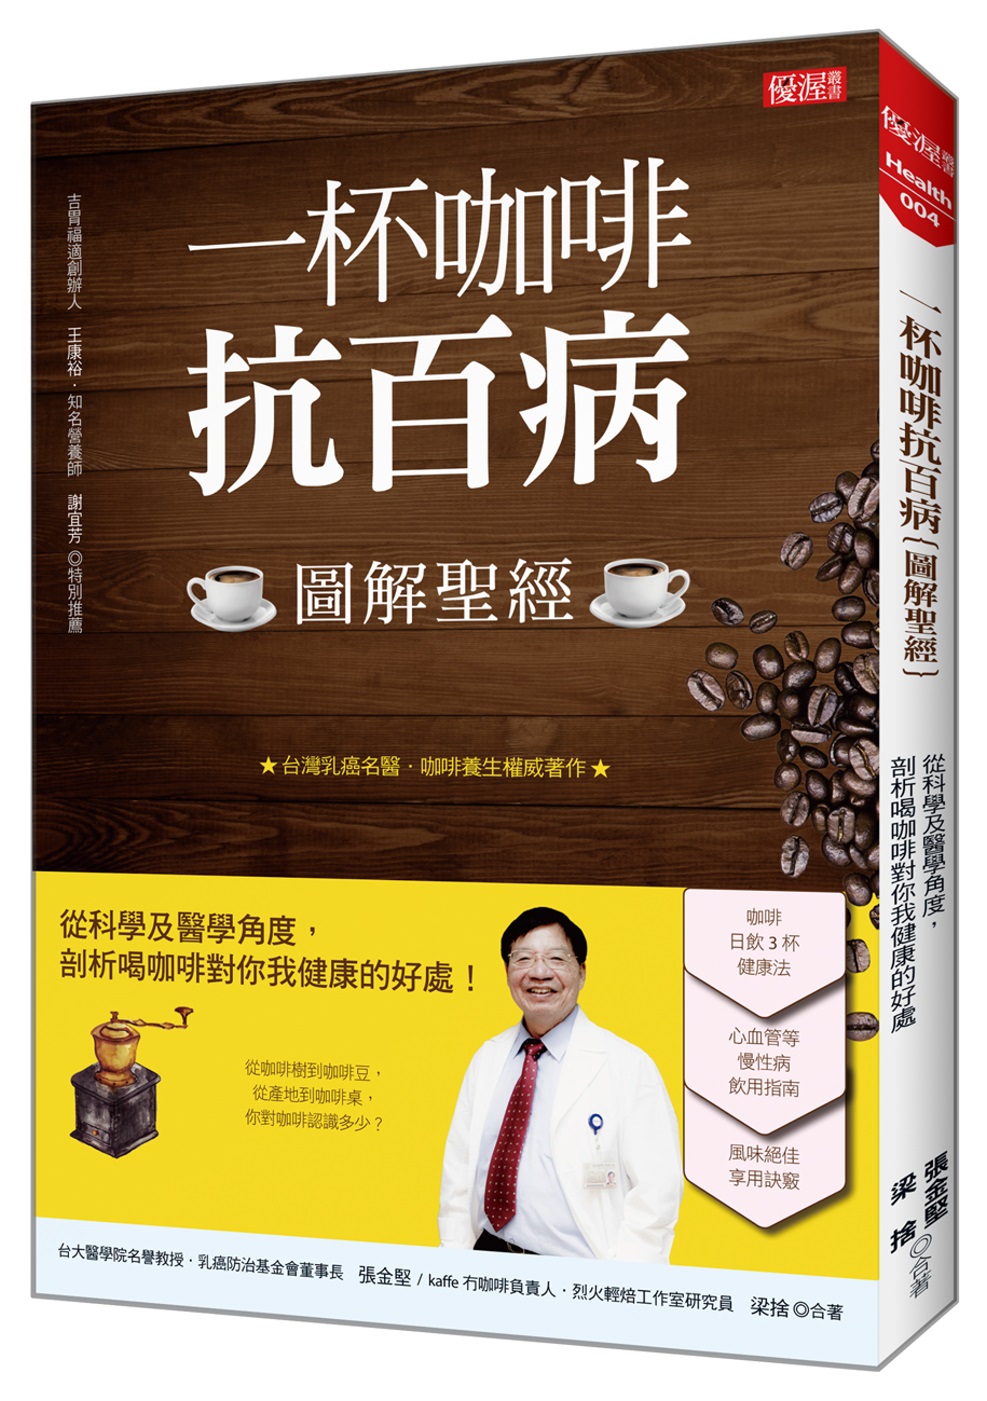 一杯咖啡抗百病（圖解聖經）：從科學及醫學角度， 剖析喝咖啡對你我健康的好處！